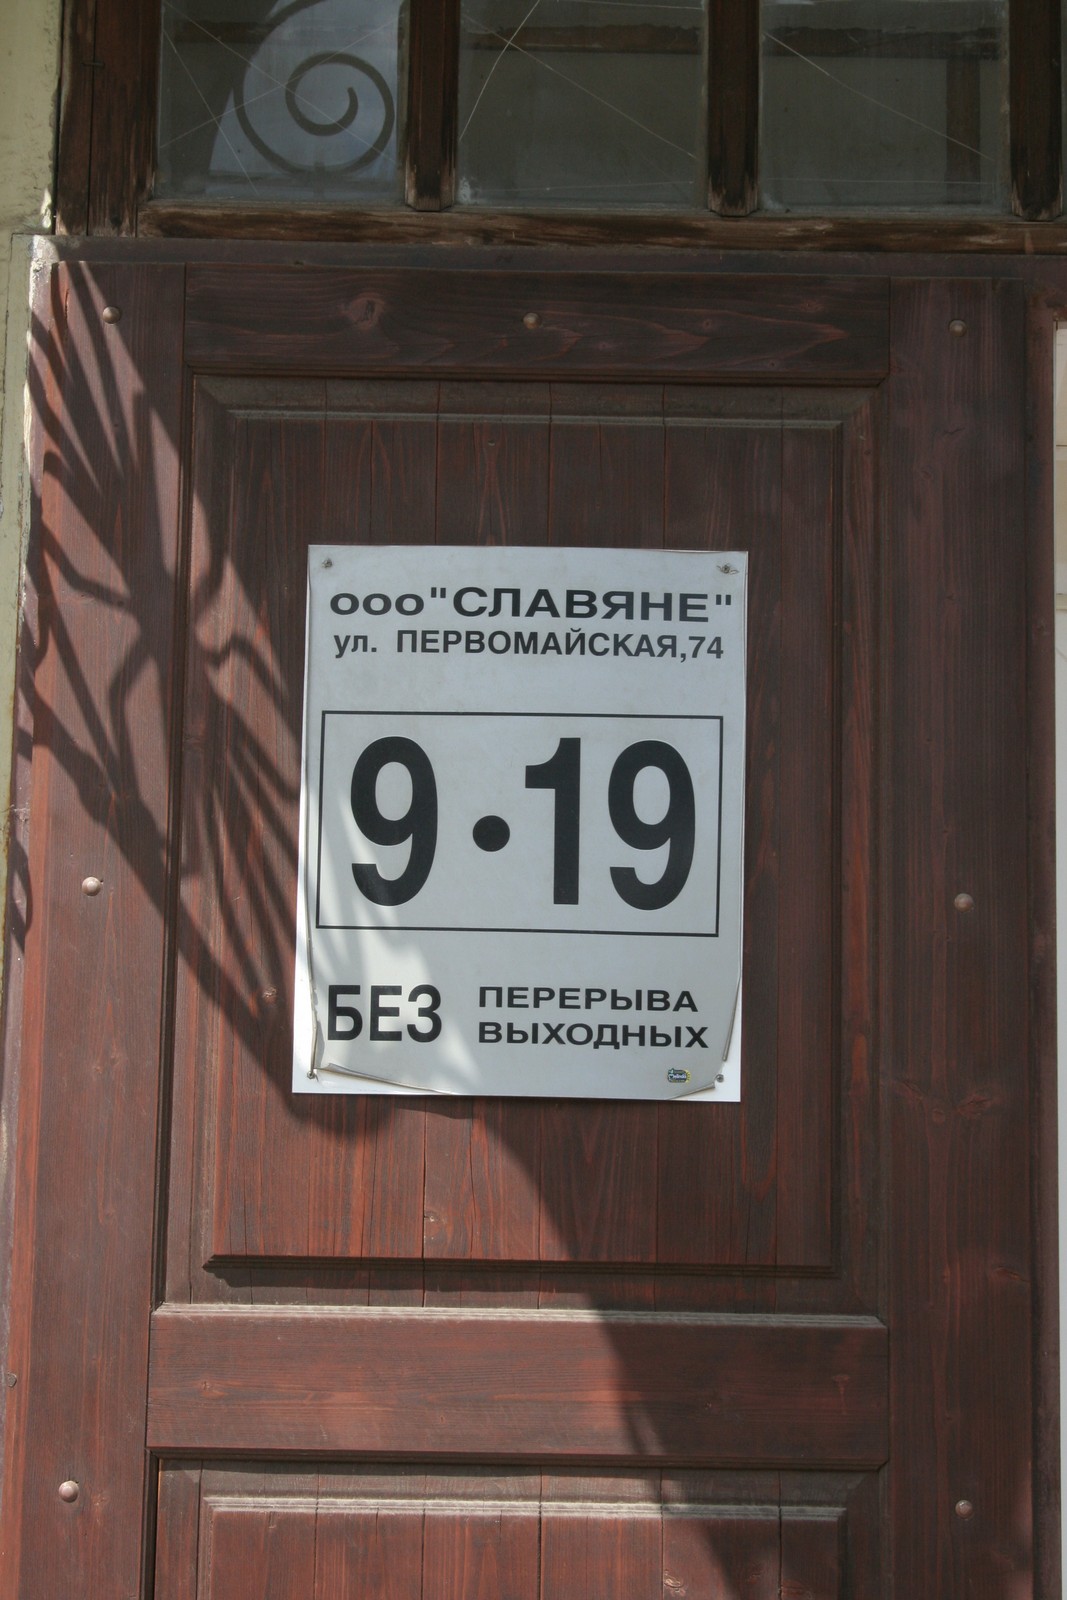 Александров, Владимирская область (14.06.2008)